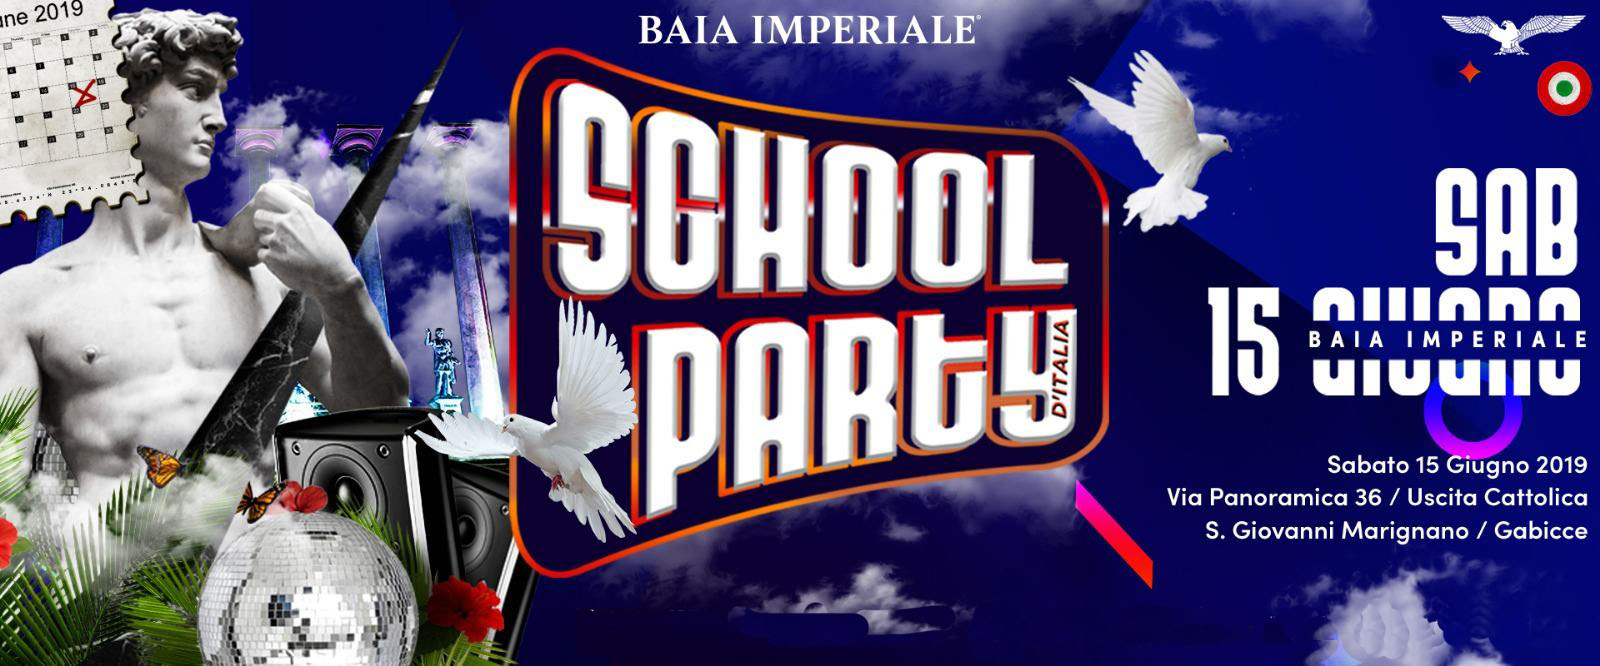 baia imperiale 15 giugno 2019 school party